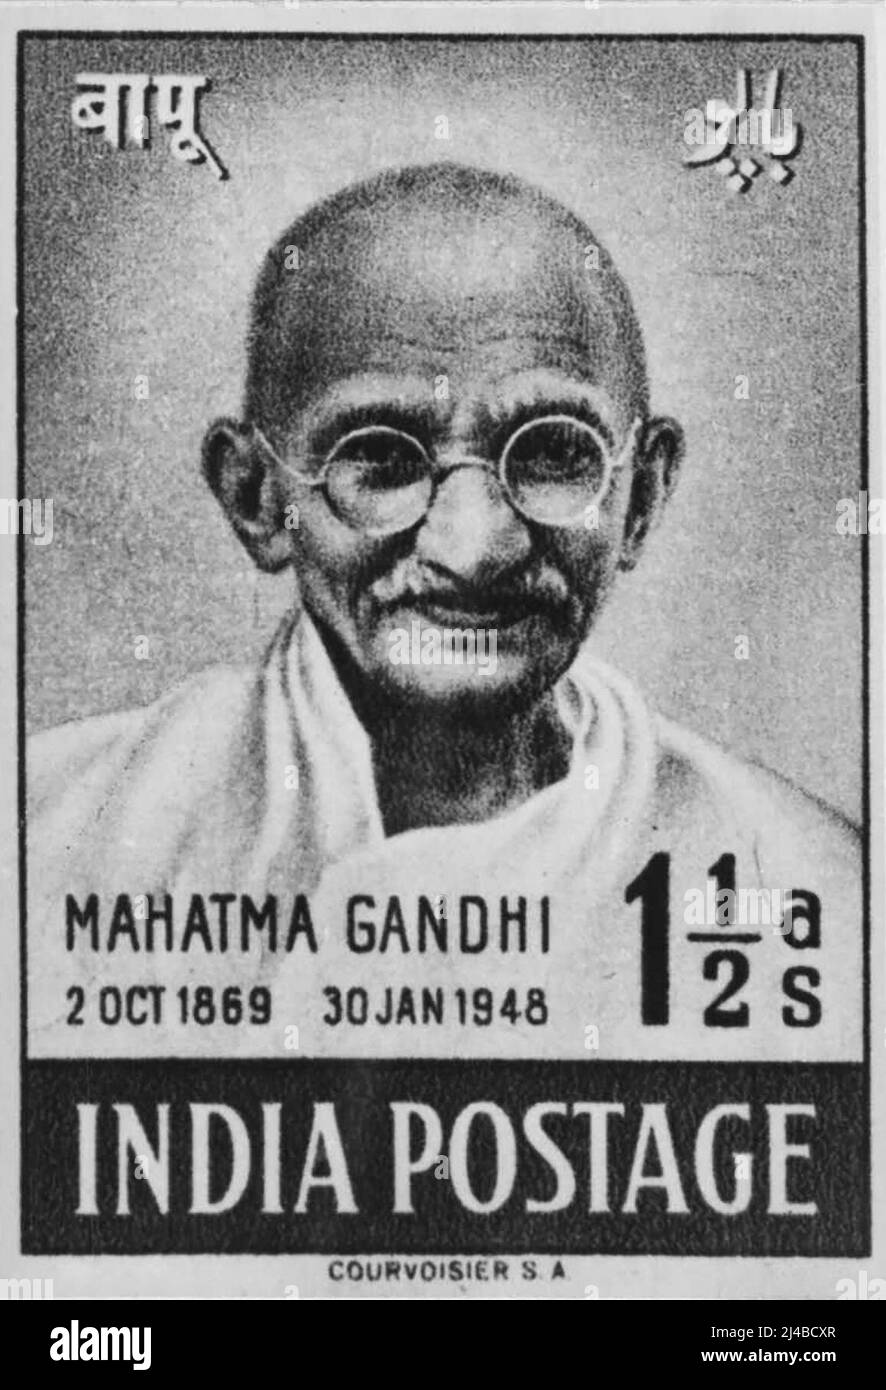 Mahatma Gandhi Memorial Stamp -- über 3 crores dieser Marken werden gedruckt und anlässlich des ersten Jahrestages des Unabhängigkeitstages ausgegeben. Fünf Millionen Marken dieser Bezeichnung haben Indien bereits aus der Schweiz erreicht, wo sie im Fotogravdruck gedruckt werden. Die anderen Bezeichnungen sind 3½ as, 12 as. Und RS. 10. 27. Juli 1948. Stockfoto